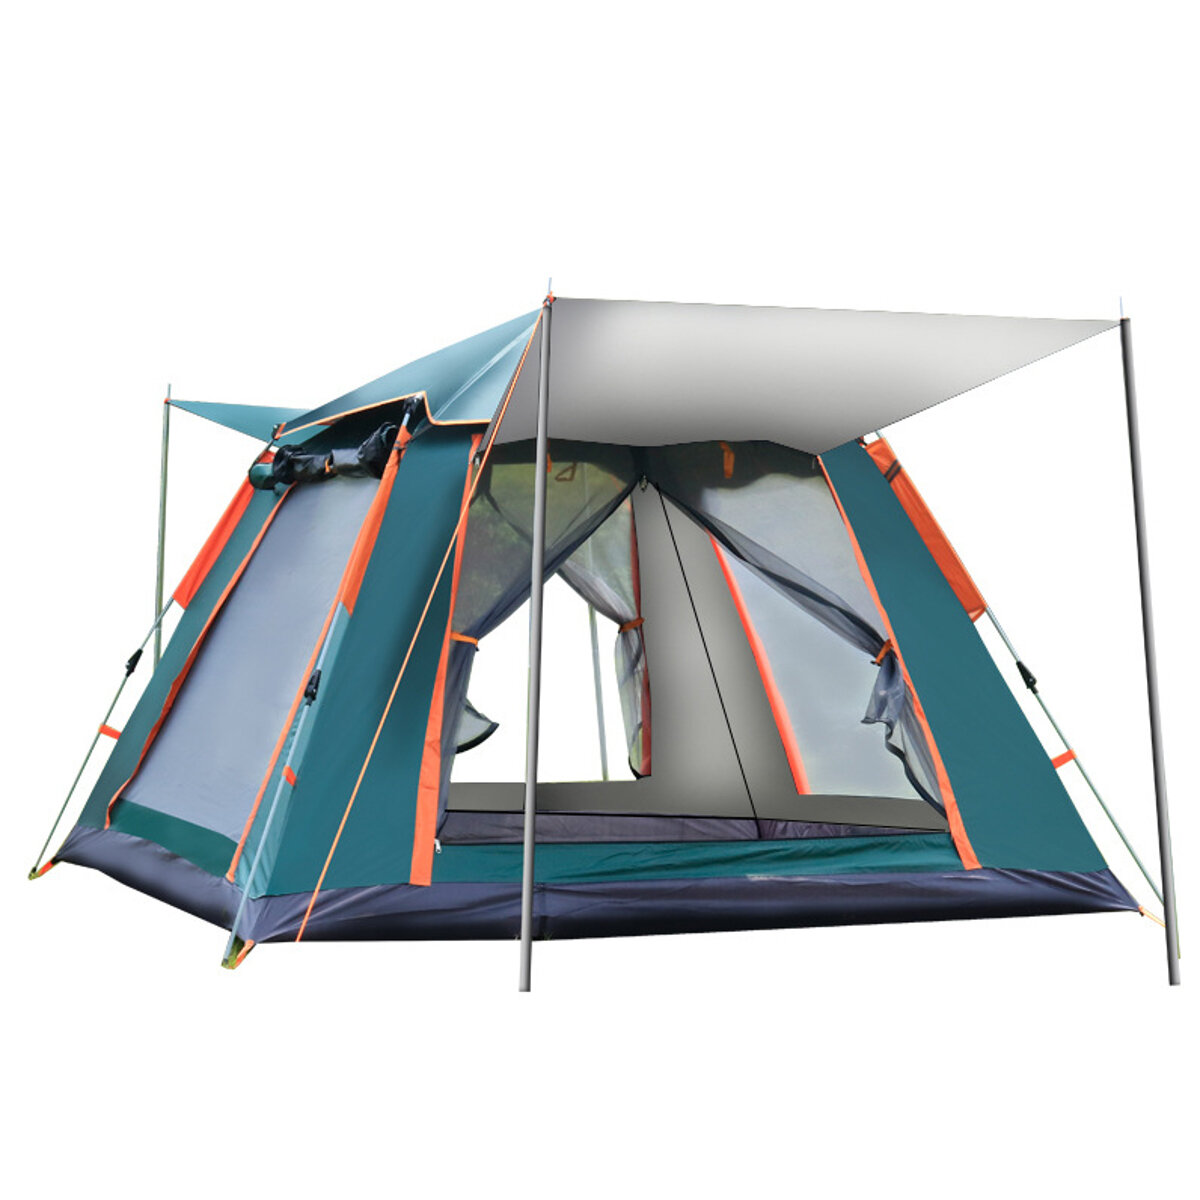 IPRee® 6-7 Kişilik Tam Otomatik Çadır Gümüş Tutkal Yağmur Geçirmez Rüzgar Geçirmez Outdoor Kampçılık Aile Pikniği Seyahat Çadırı